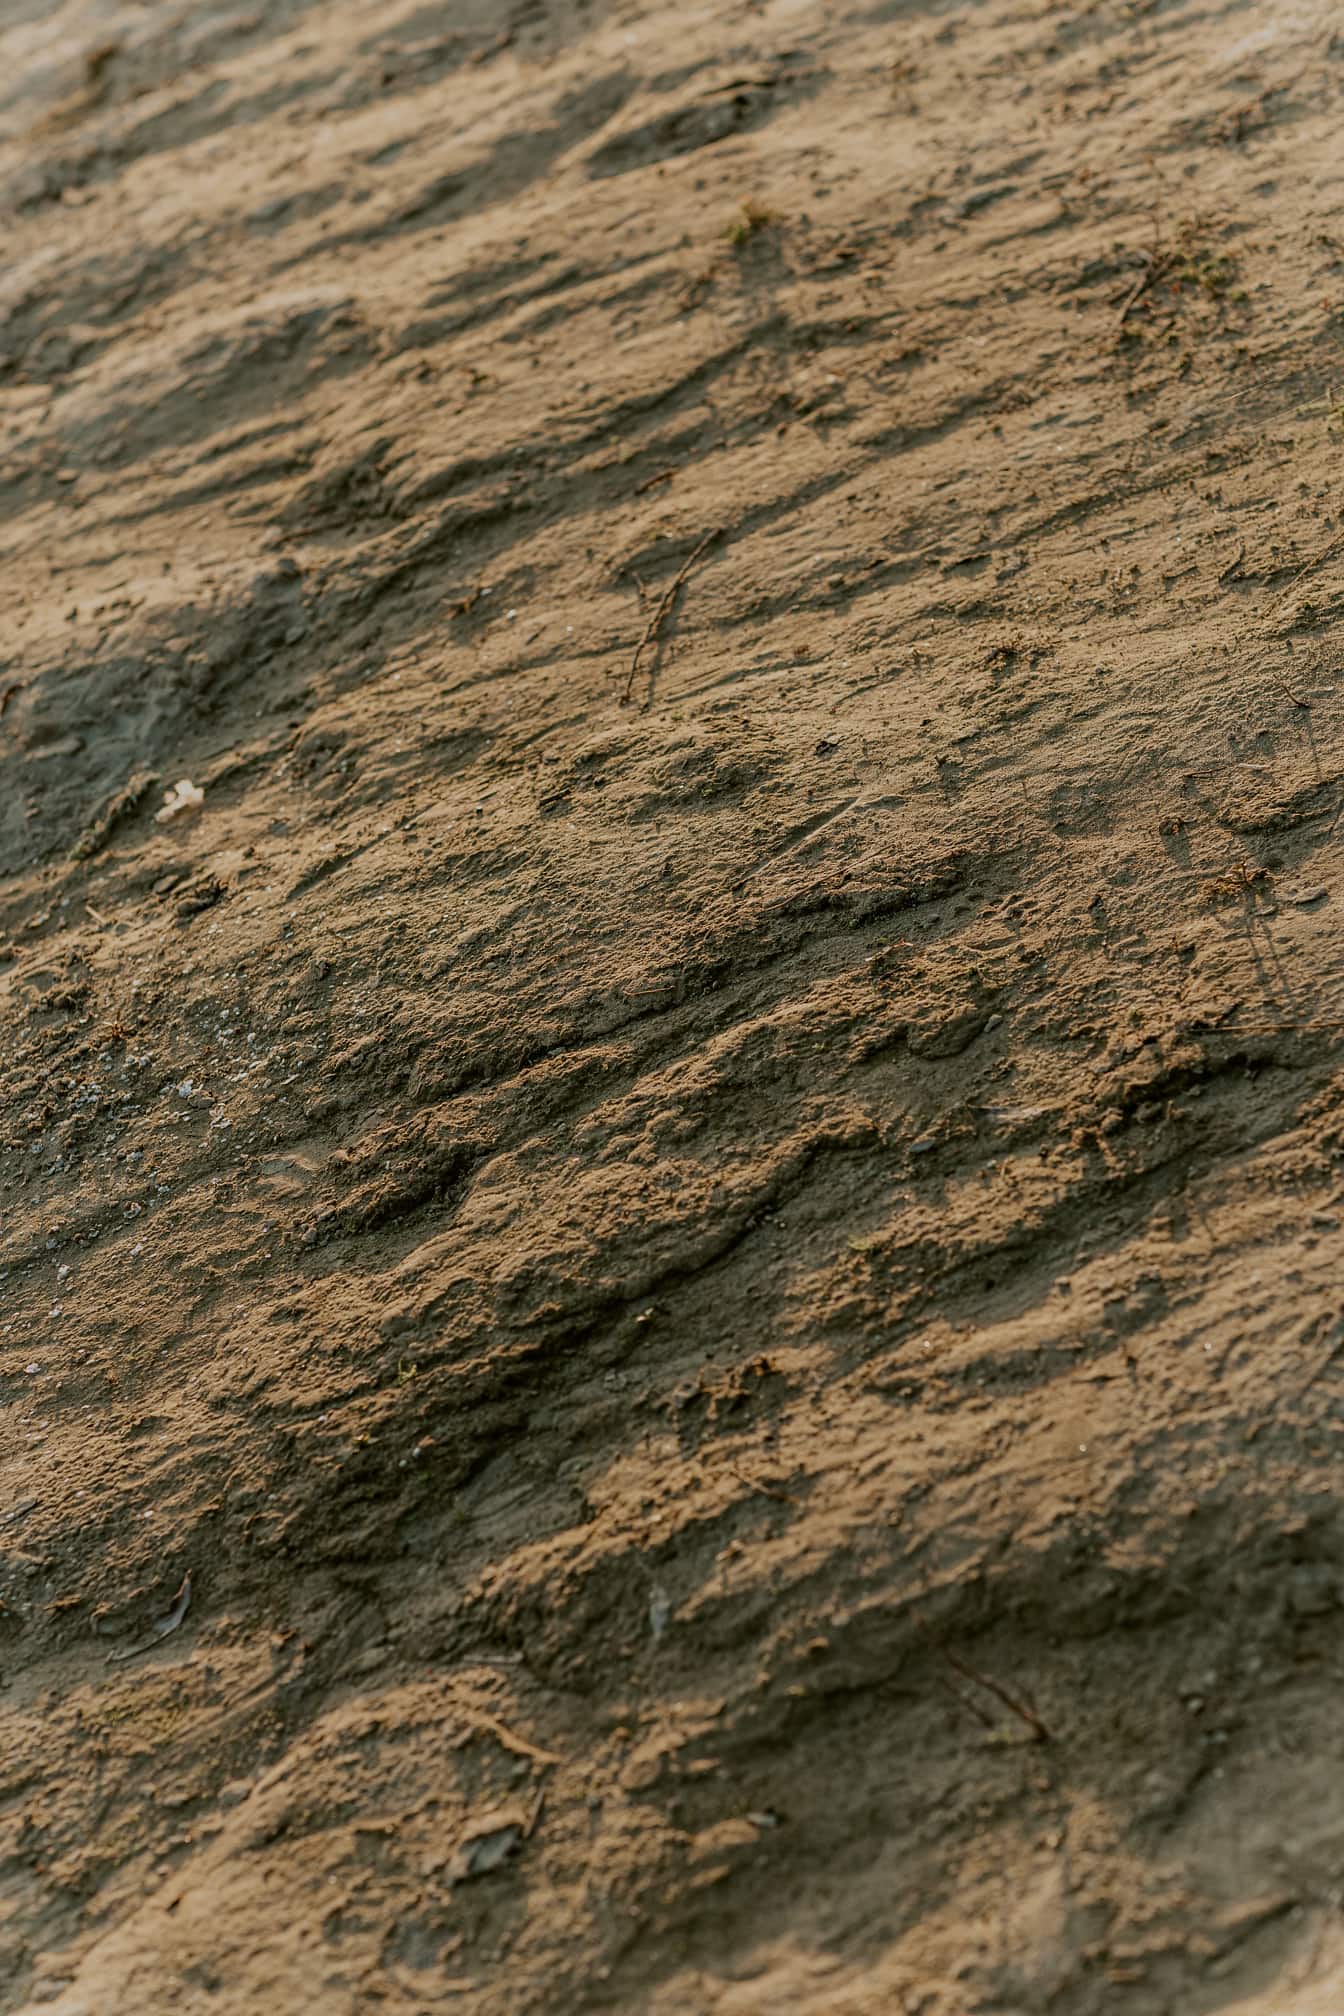 Gulbrun grov yta av torr lera och sand